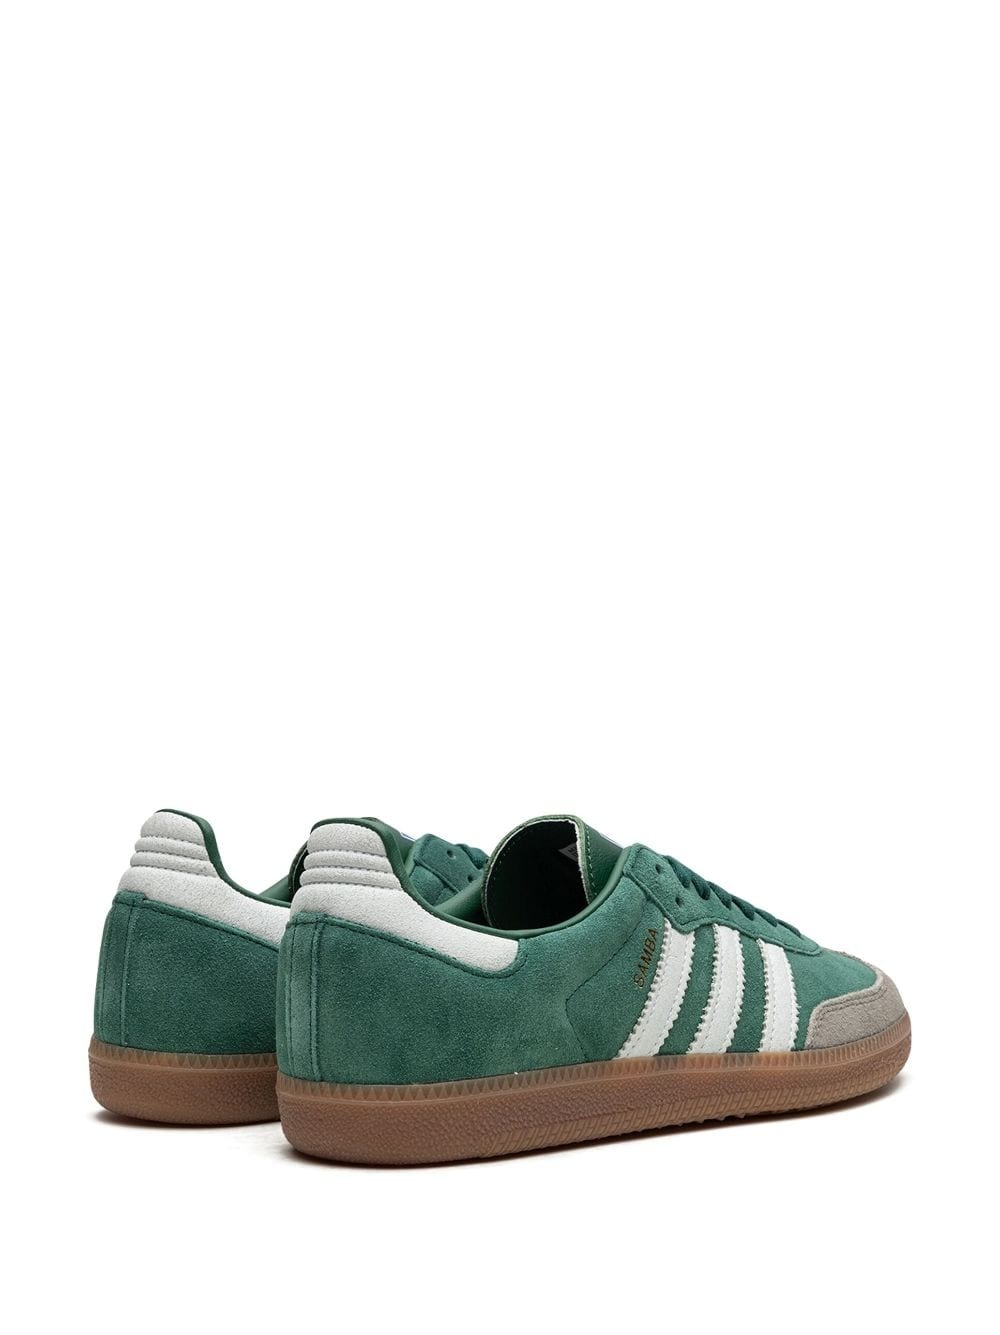 Samba OG "Court Green" sneakers - 3